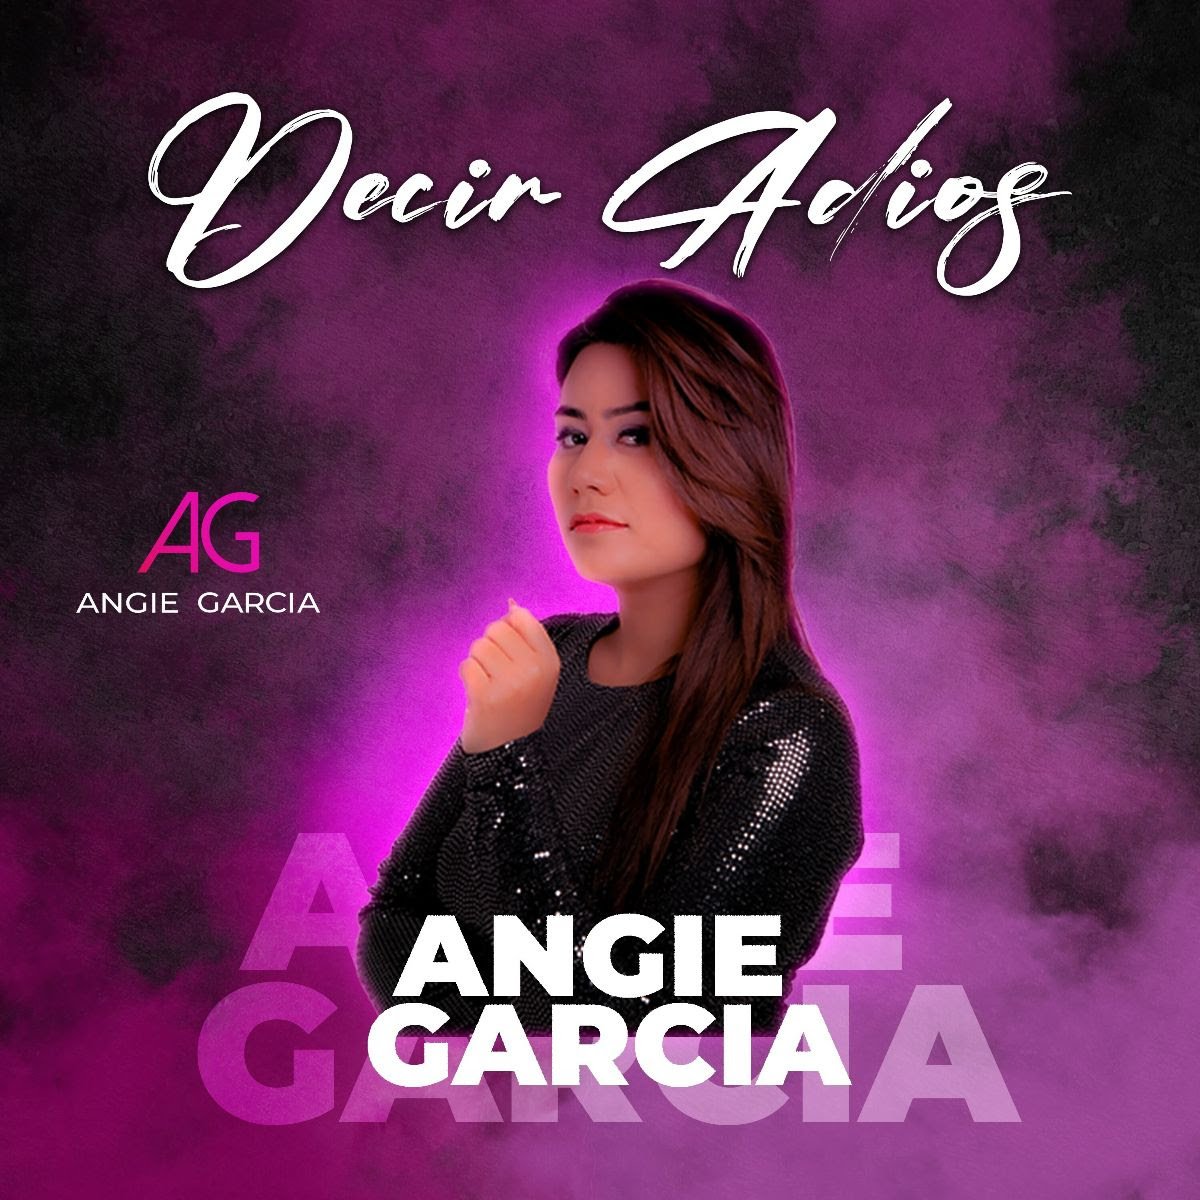 Angie García reconocida cantante bogotana lanza su mas reciente sencillo para Decir Adiós